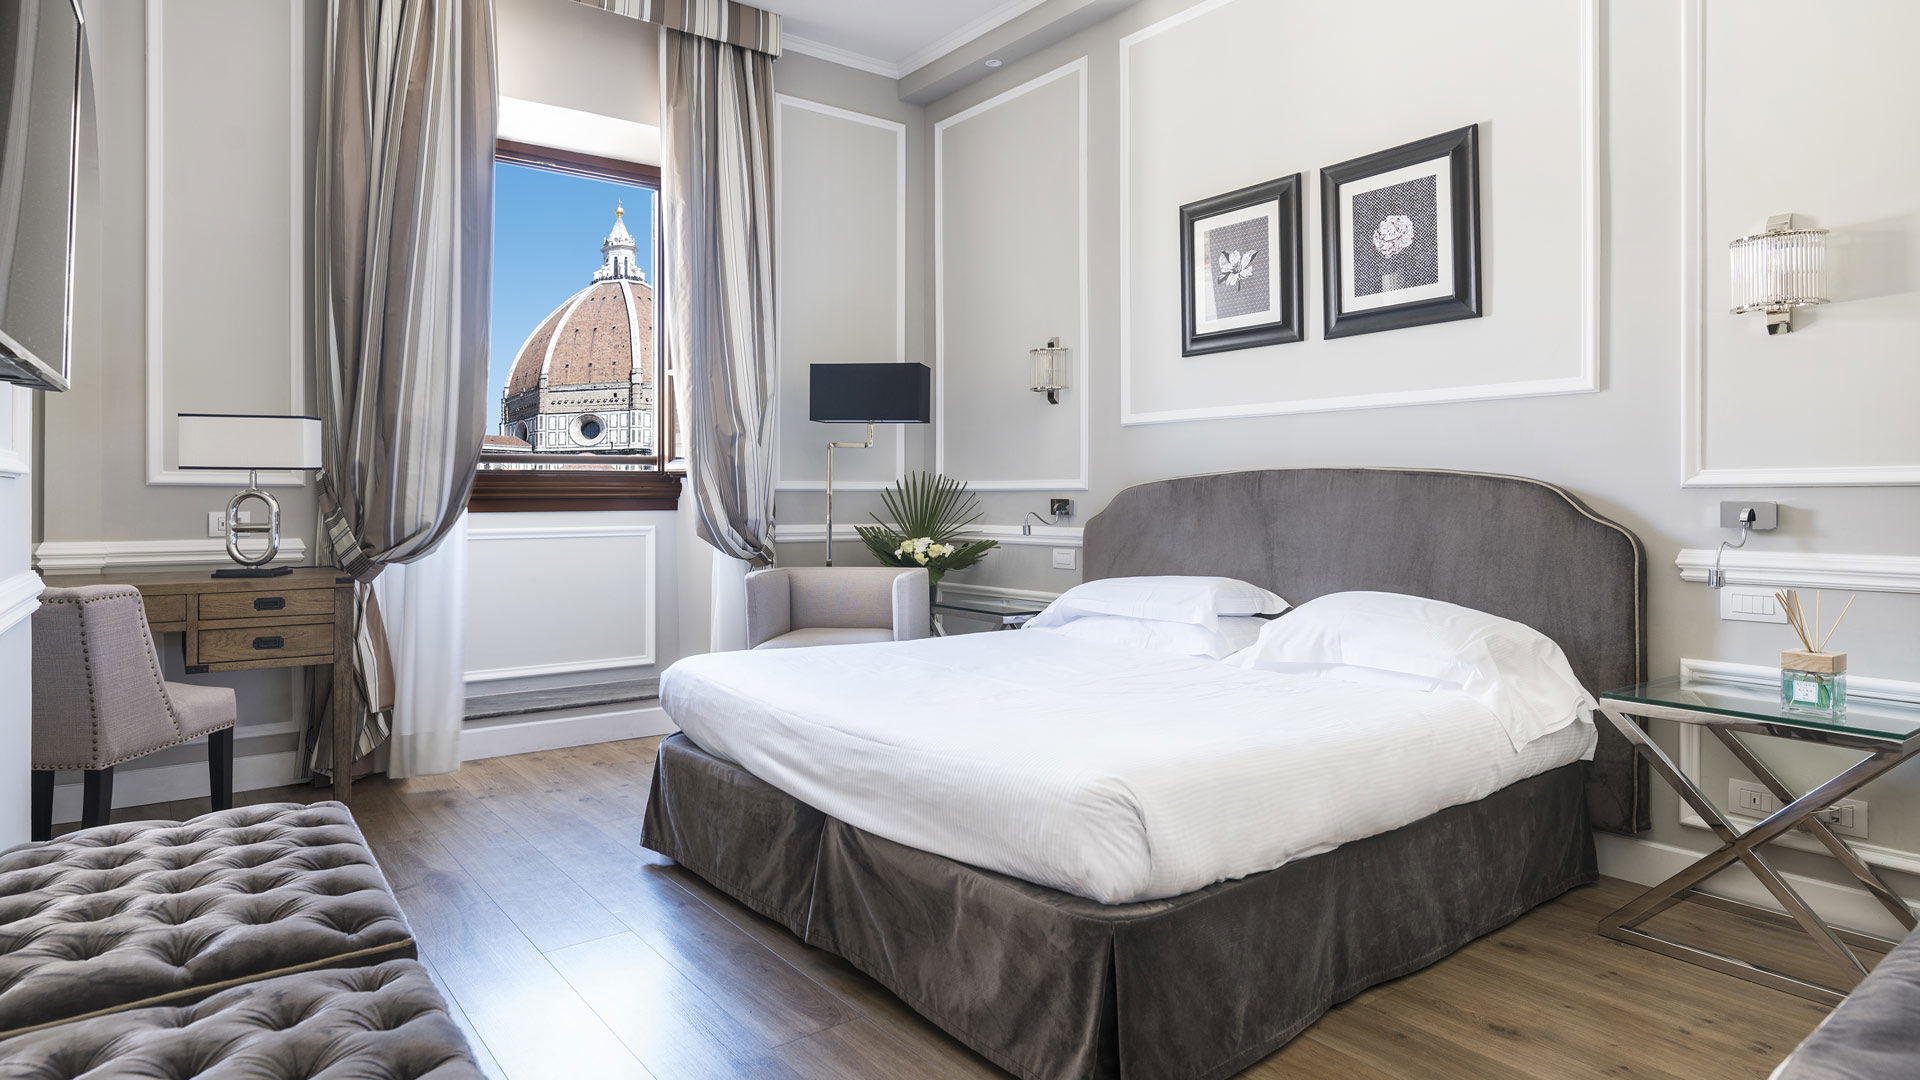 Hotel Calzaiuoli en Florencia | Reserve desde el sitio web oficial (fhhotelgroup.it)